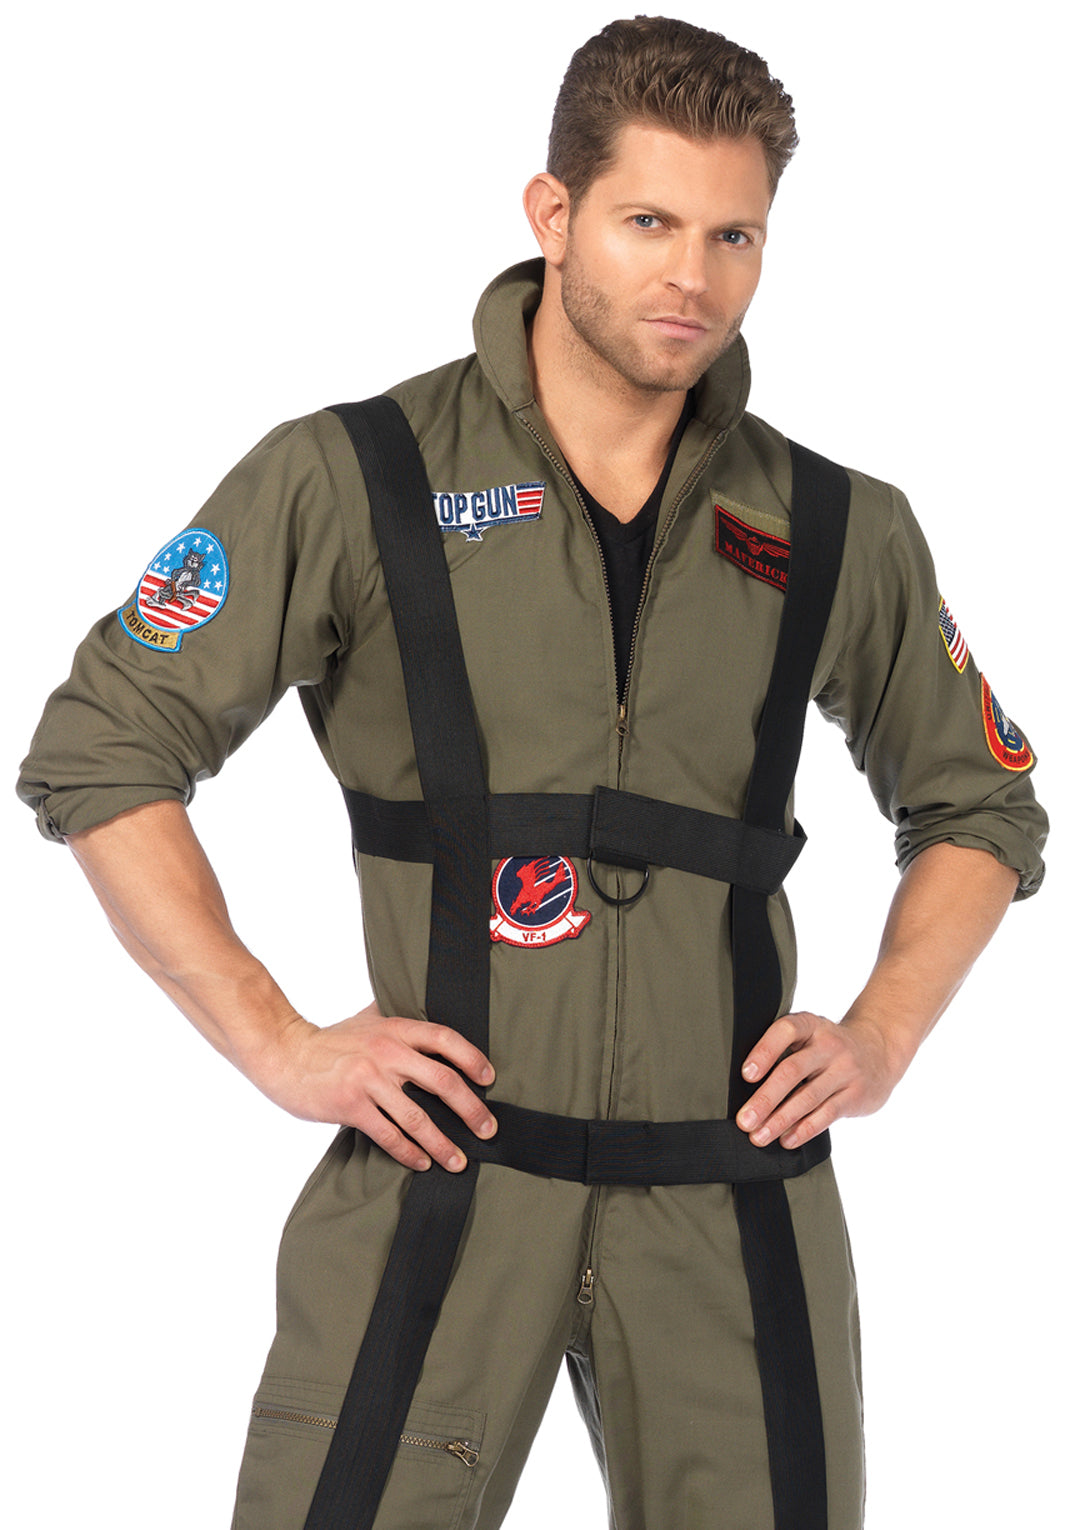 3-piece Top Gun Paratrooper,flight Suit,interchangeable Badges,harness